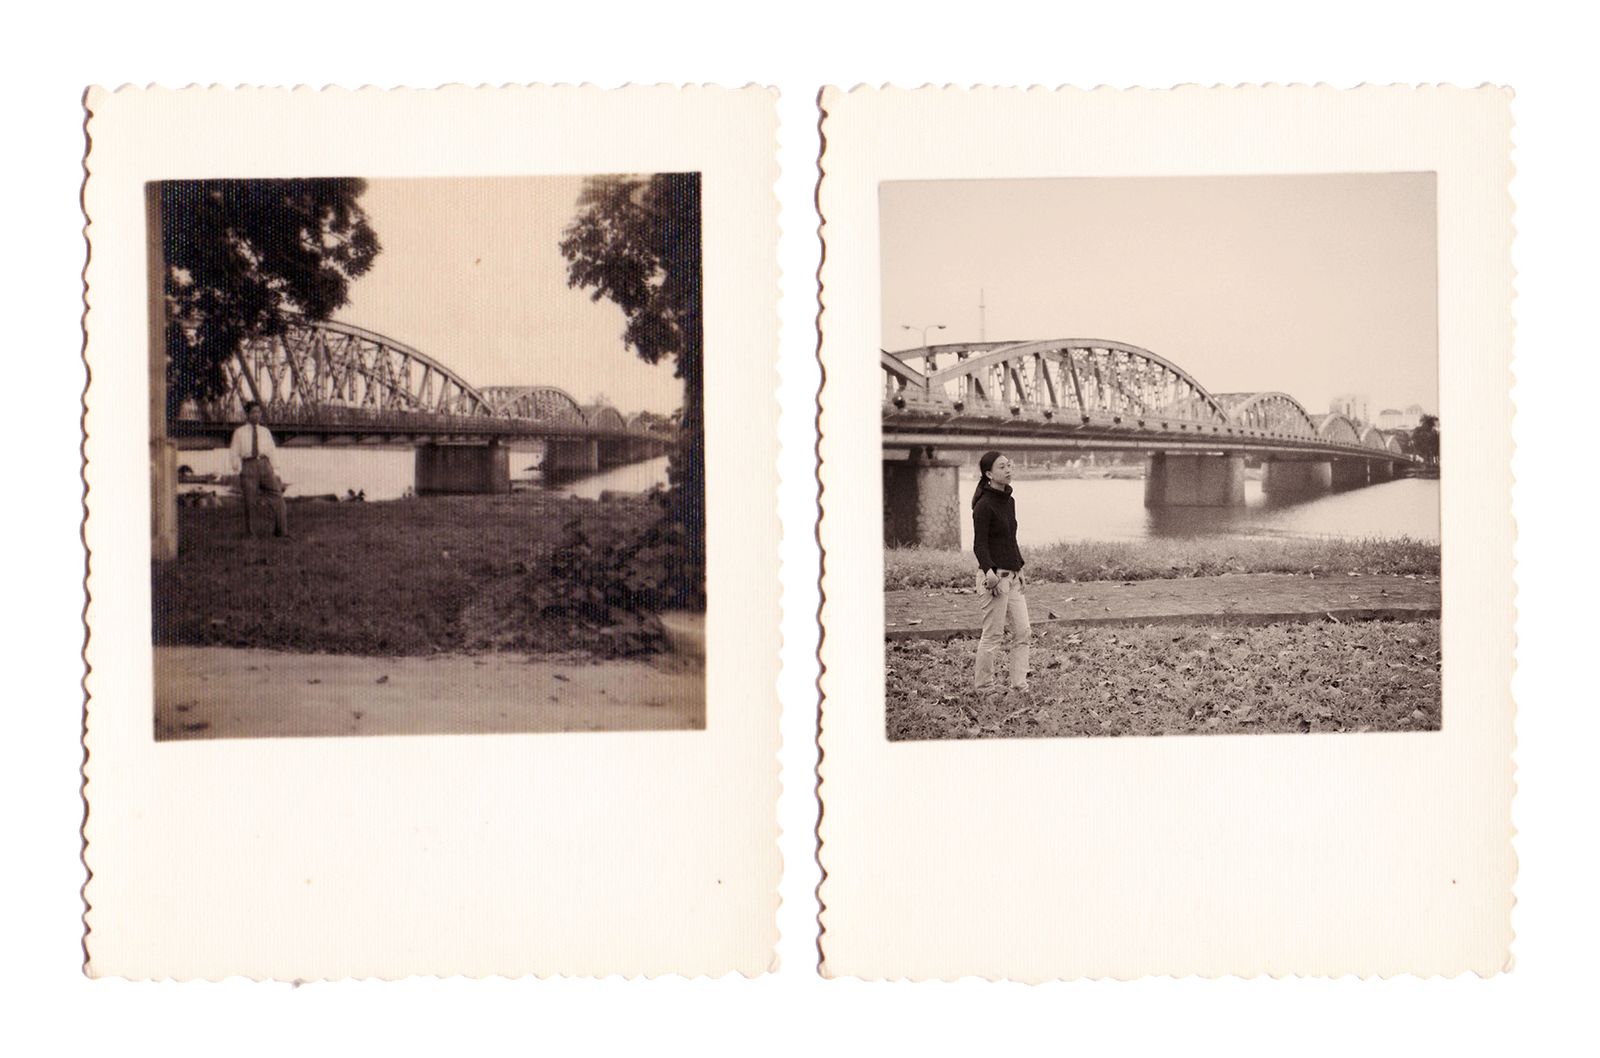 © QUYNH LAM - a brief of history: Truong Tien Bridge